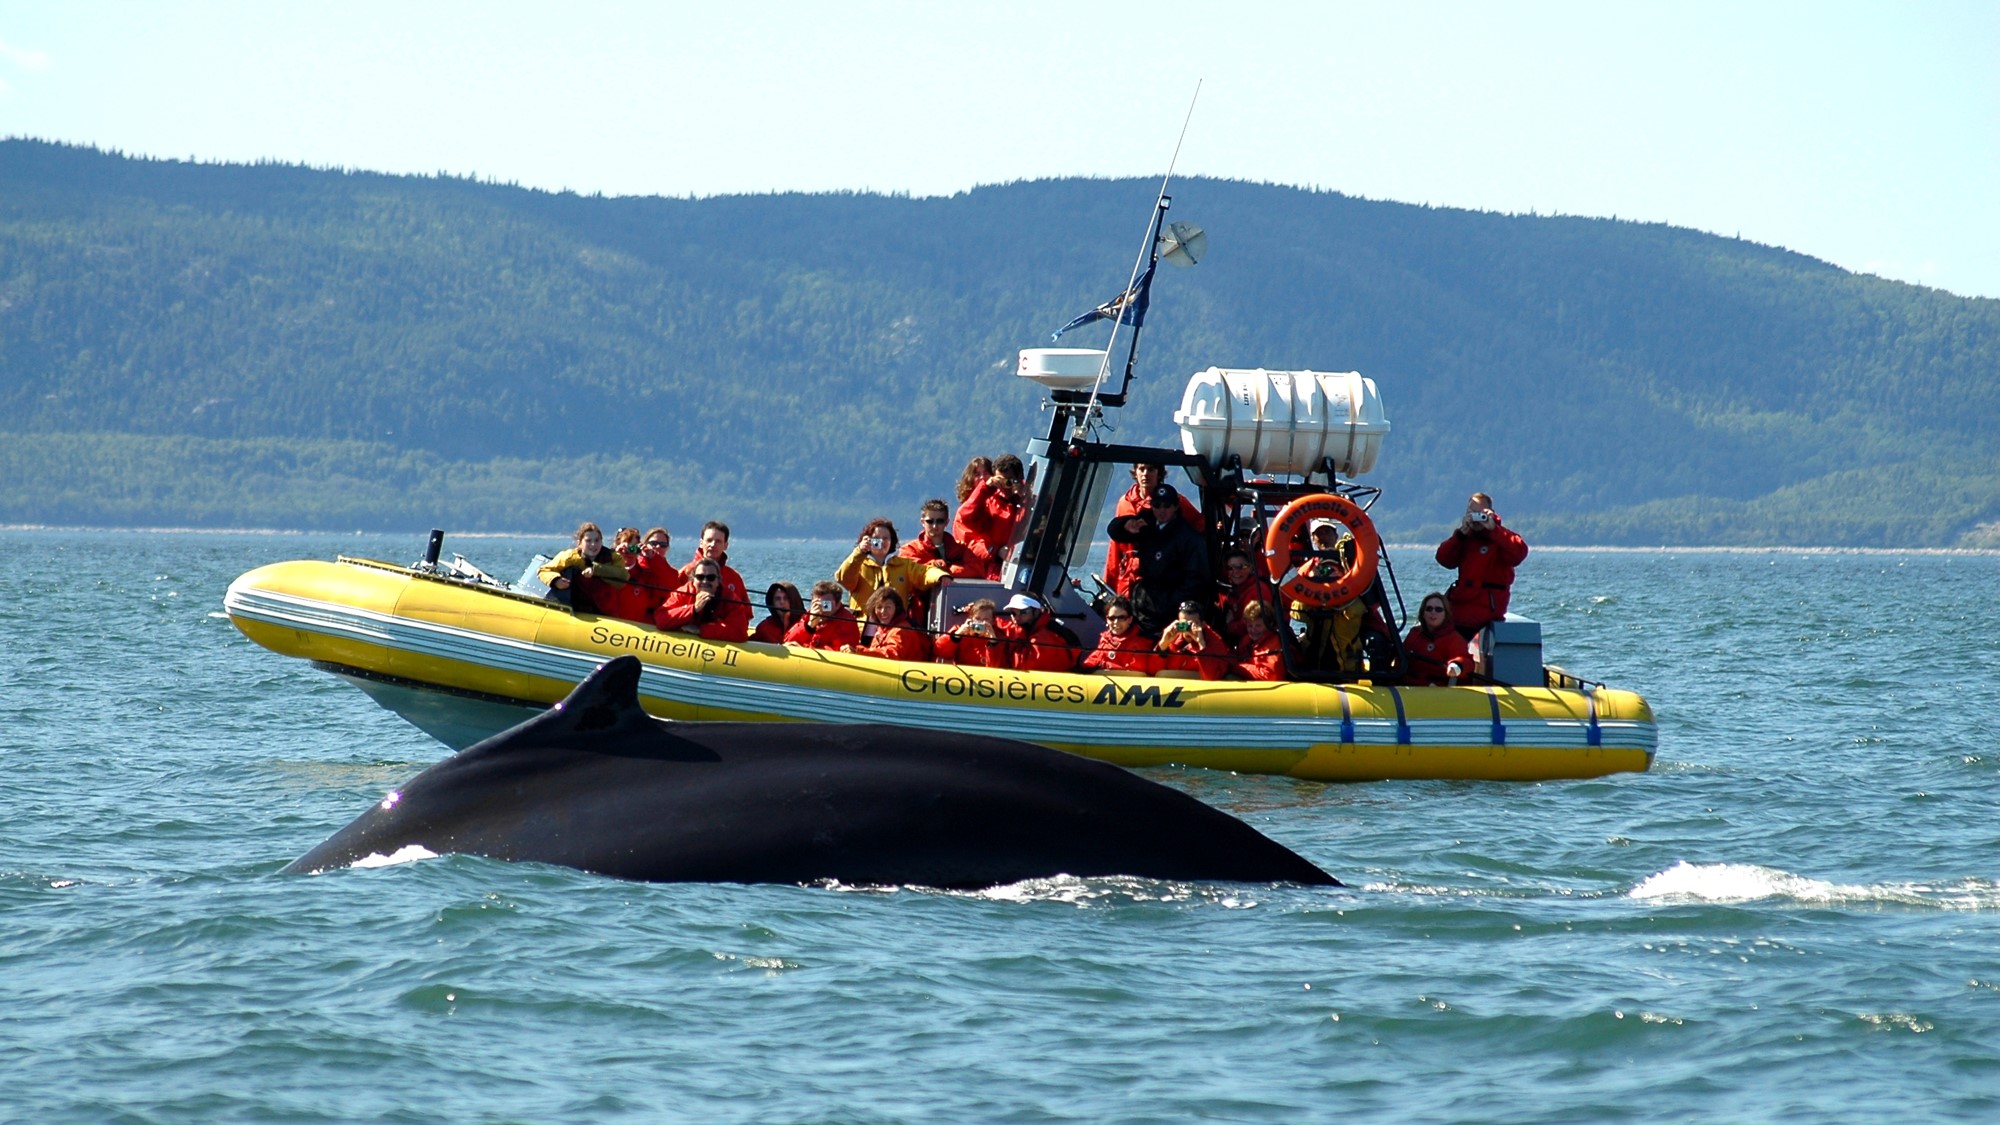 Passeio de zodíaco de observação de baleias no rio Saguenay com cruzeiros AML, 9 maneiras de explorar a charmosa charlevoix